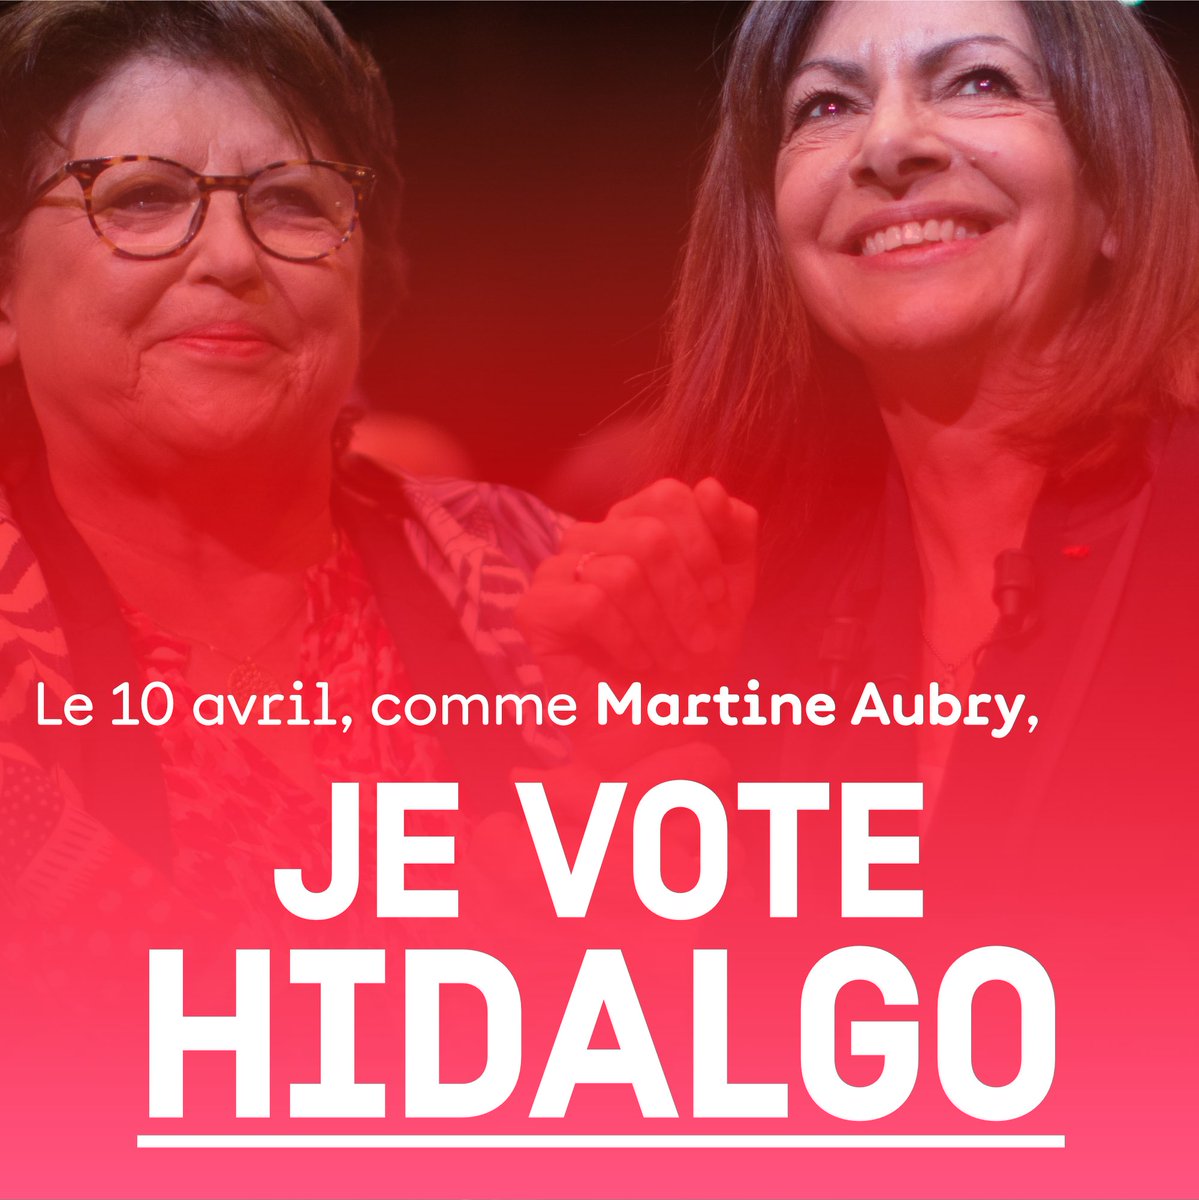 Ce dimanche 10 avril, comme Martine Aubry, #JeVoteHidalgo ! ✊